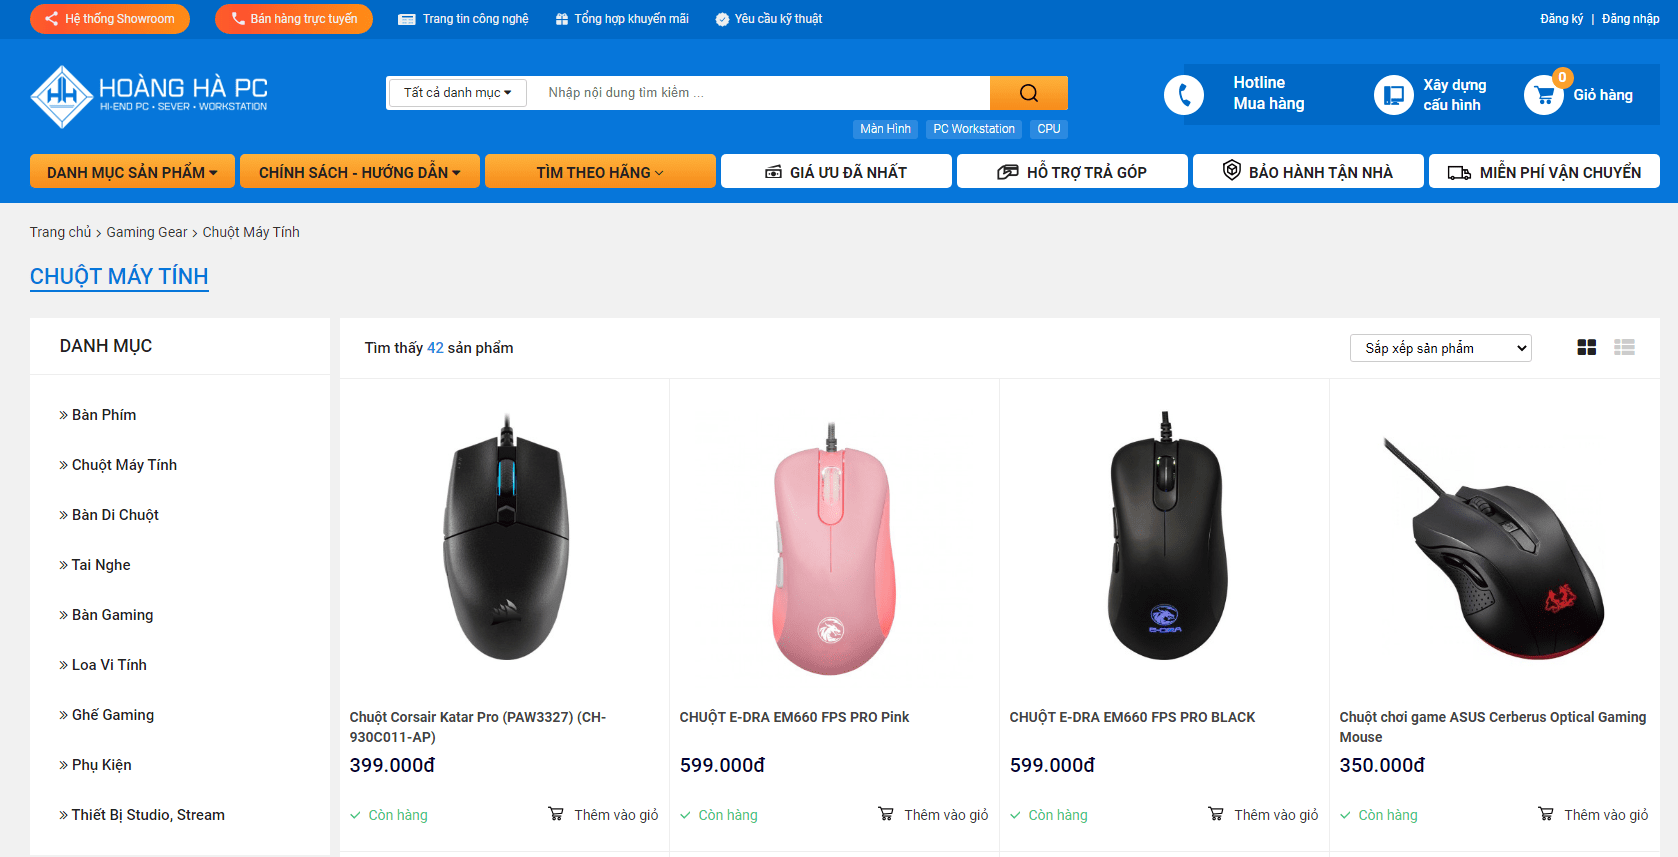 Hoàng Hà PC đang bán rất nhiều sản phẩm chuột giá rẻ ưu đãi và cực kỳ chất lượng